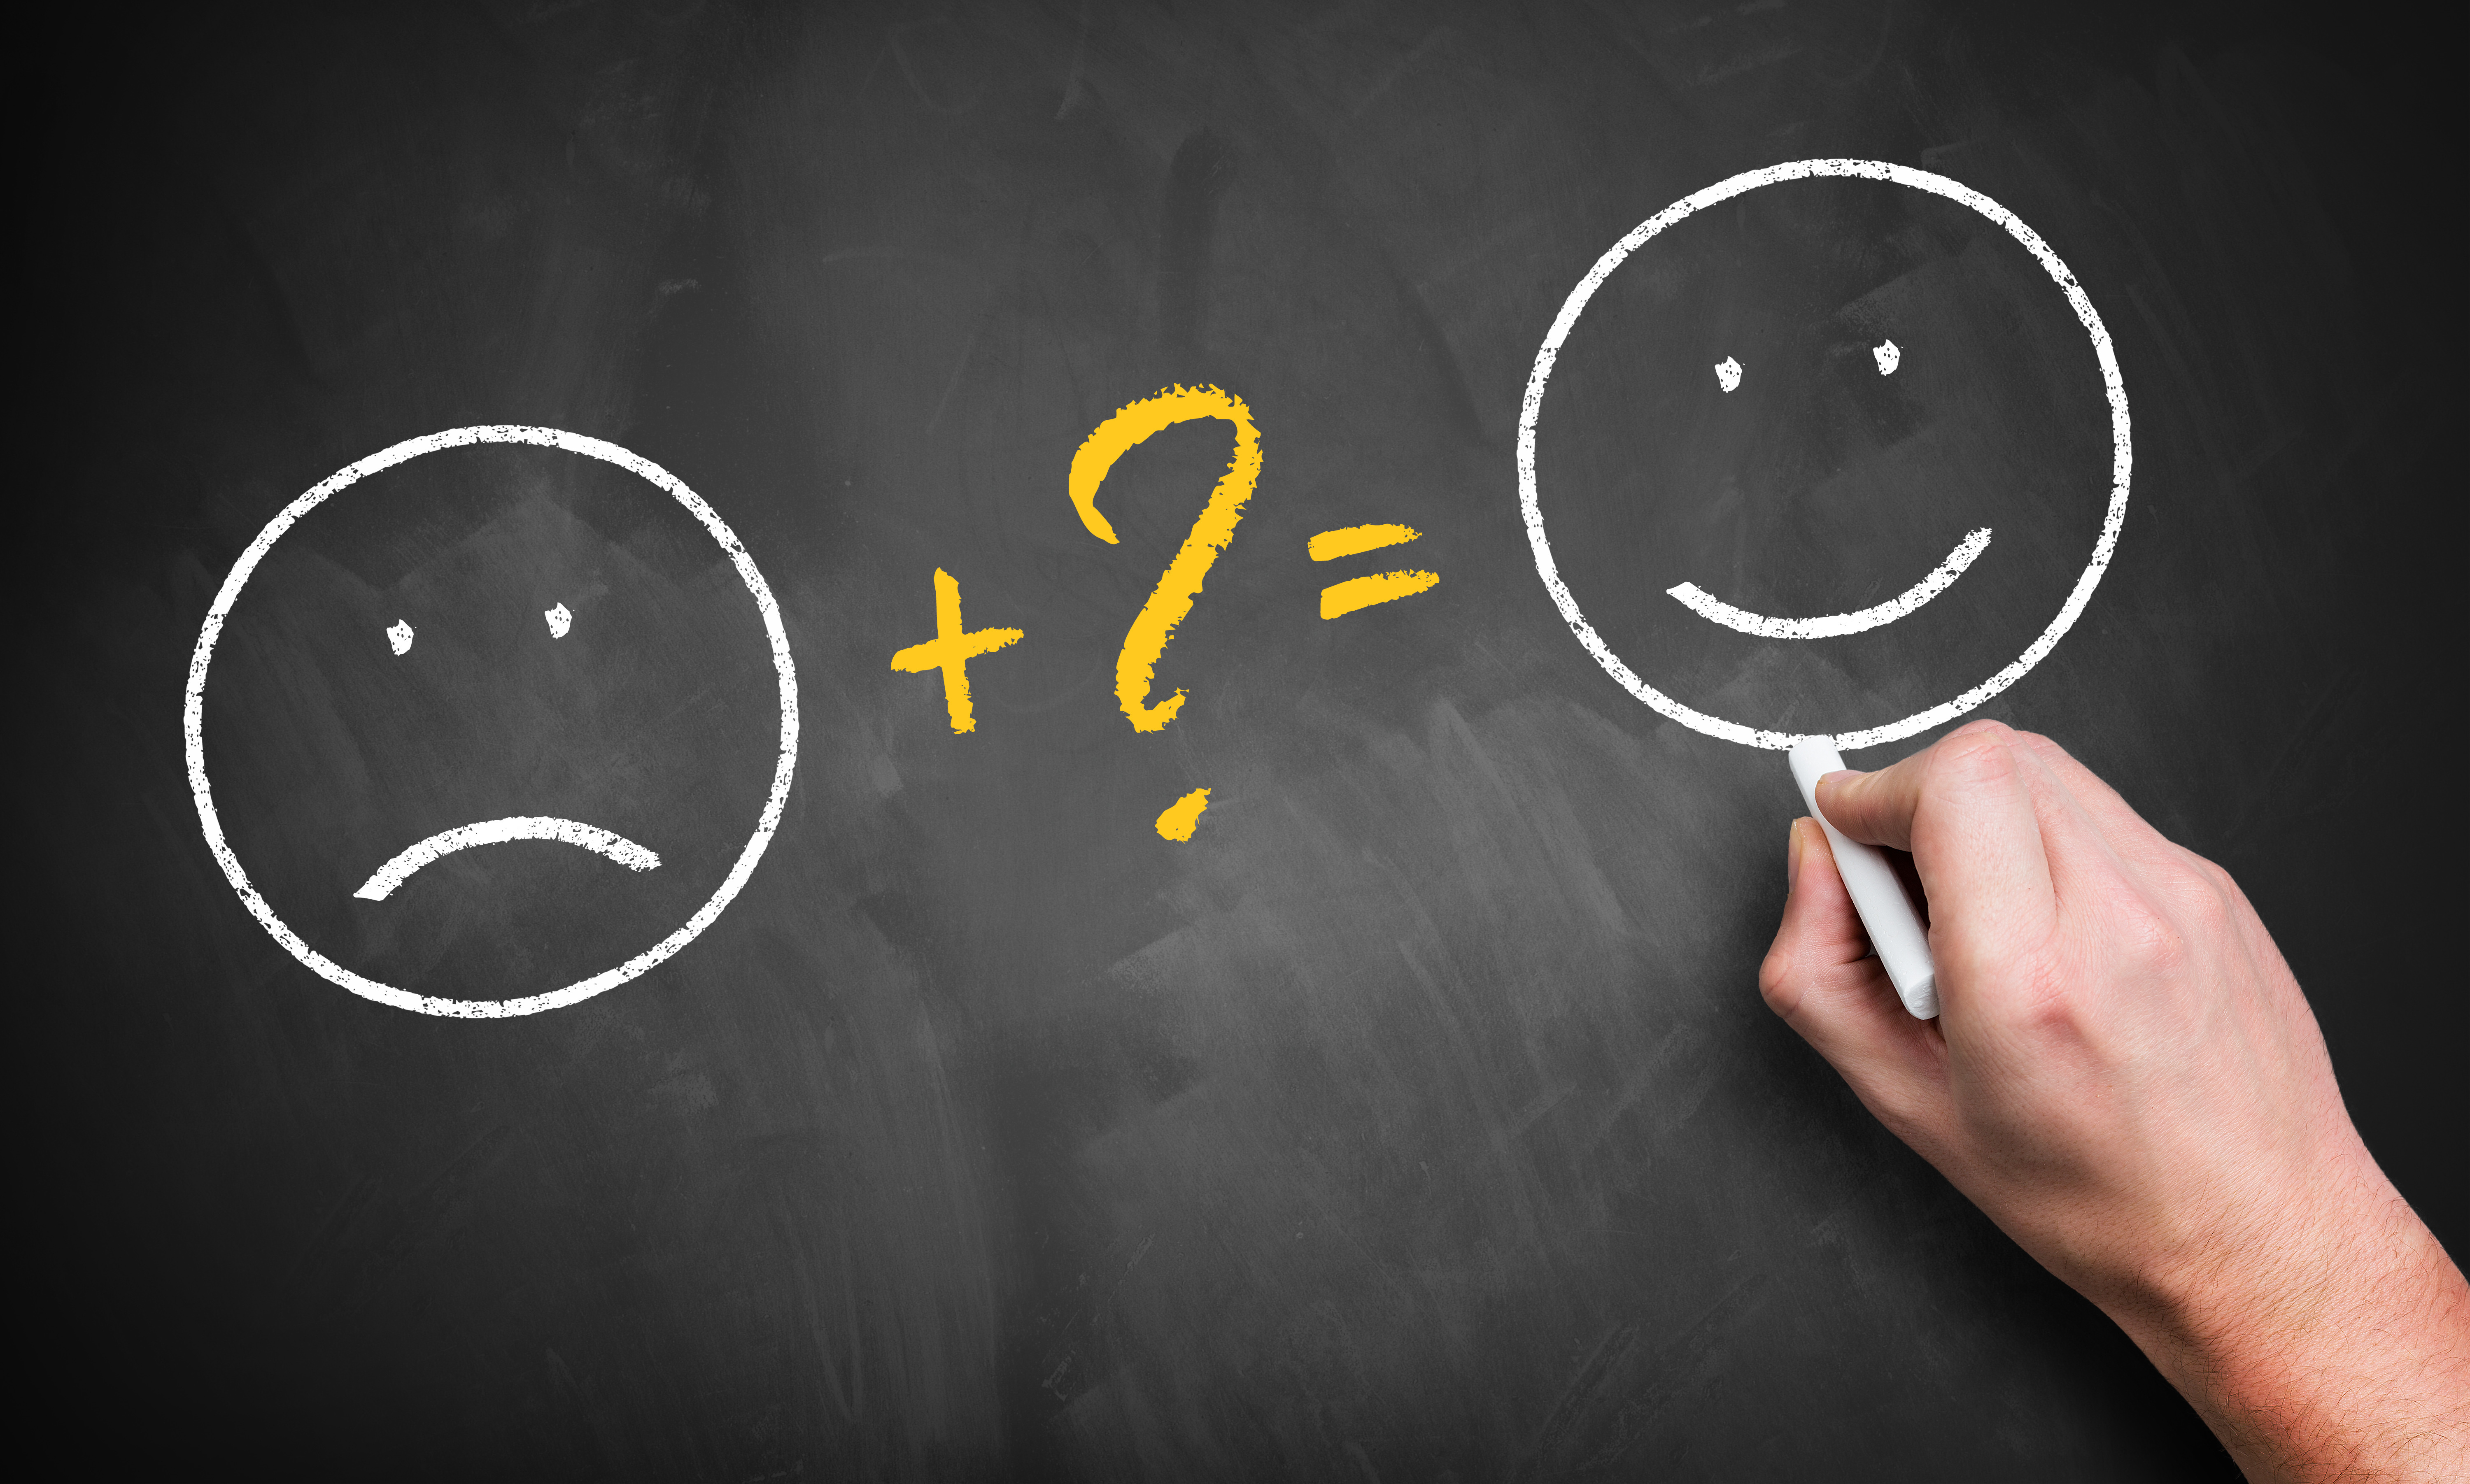 Existen soluciones prácticas para fortalecer los pensamientos positivos. (Foto Prensa Libre: Shutterstock)